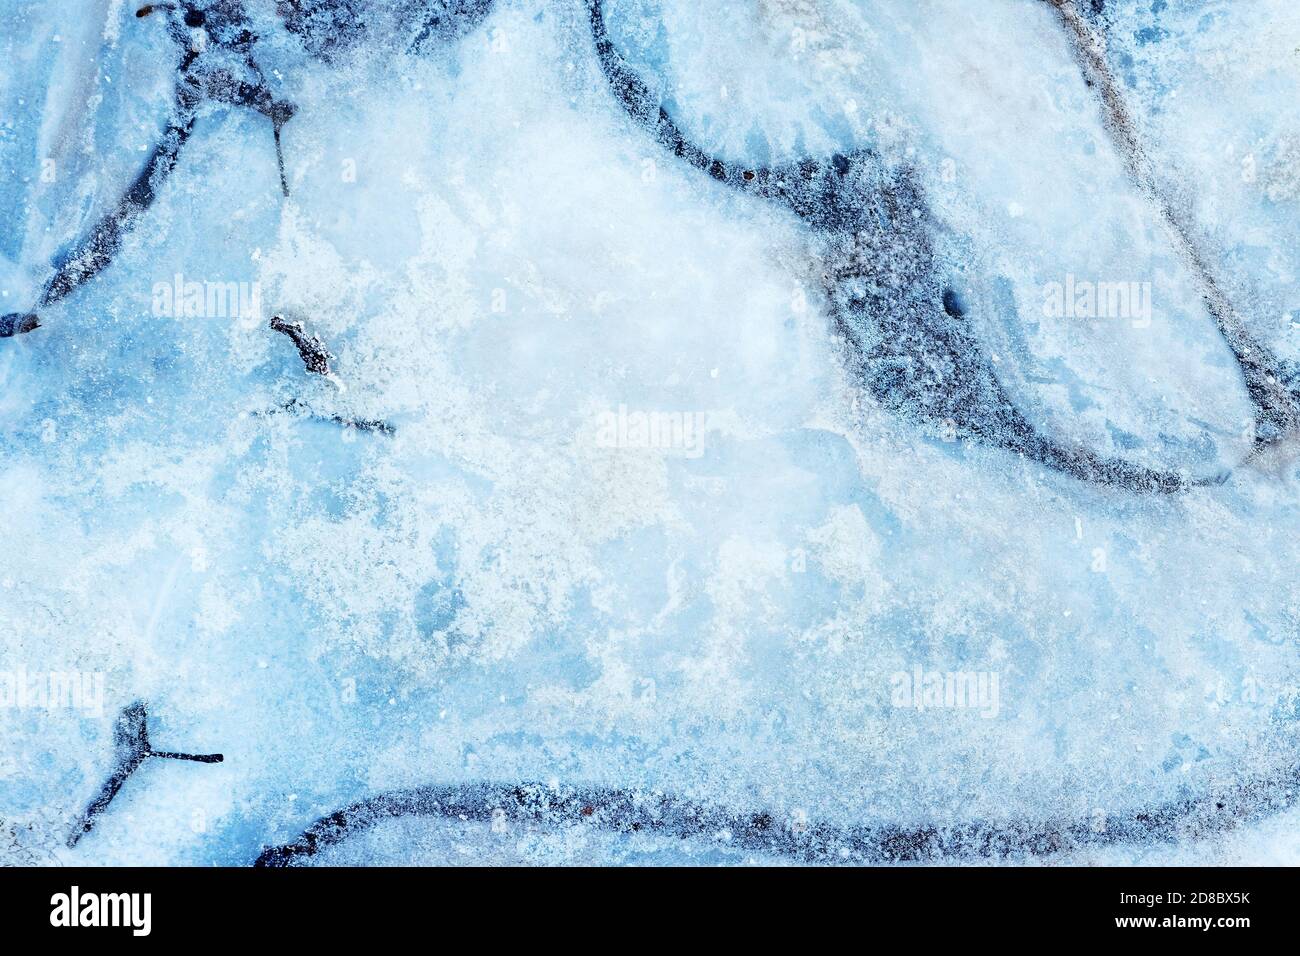 Oberfläche des natürlichen Eises, der im Winter auf dem Wasser bedeckt ist. Eisstruktur mit Zwischenfällen von Frost, Kristallen von gefrorenem Wasser. Stockfoto